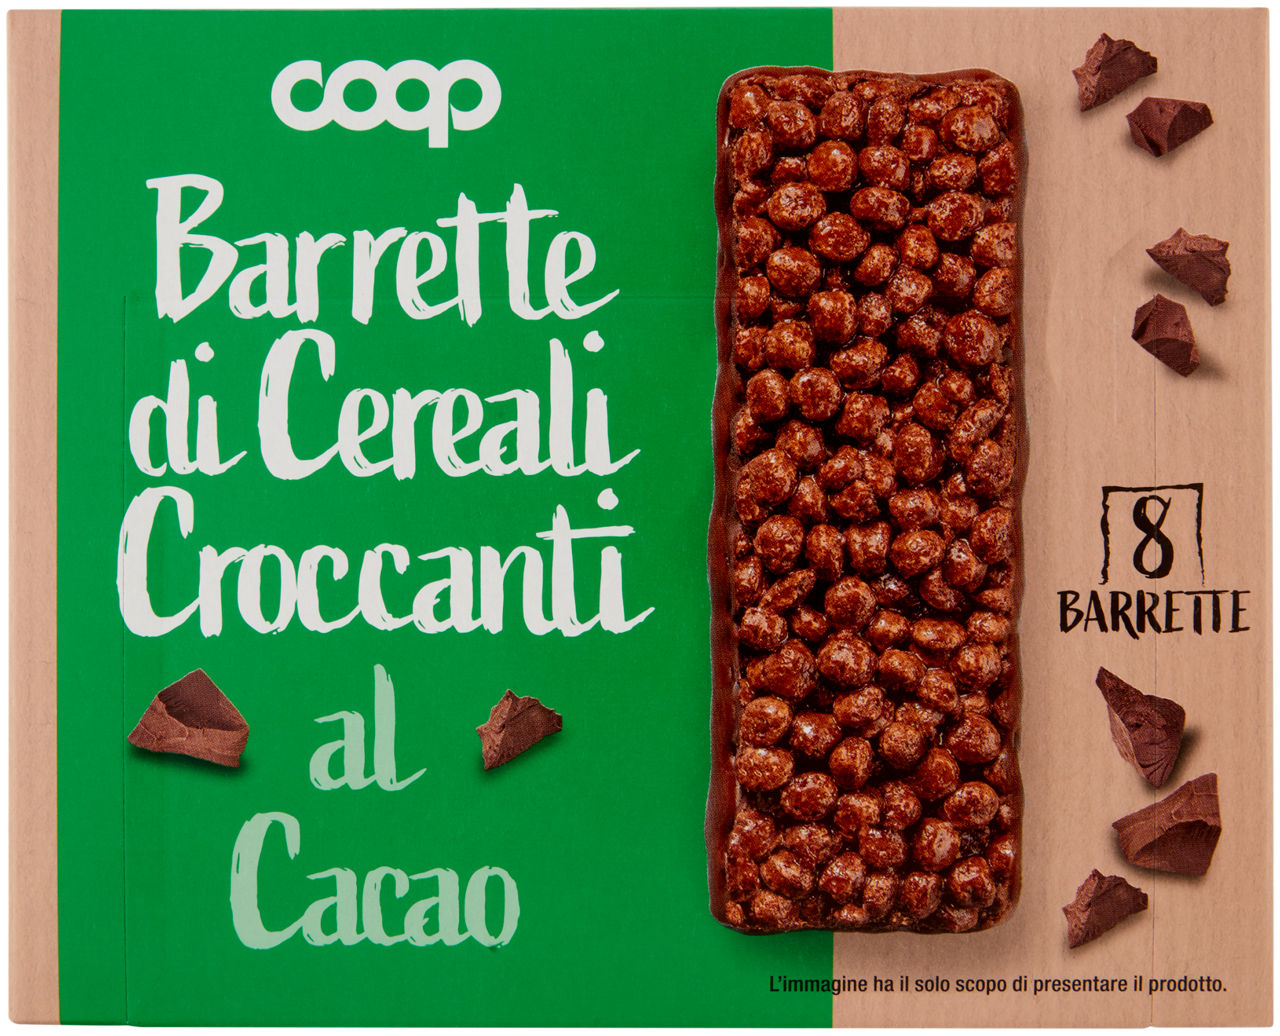 Barrette di cereali croccanti al cacao 8 x 20 g